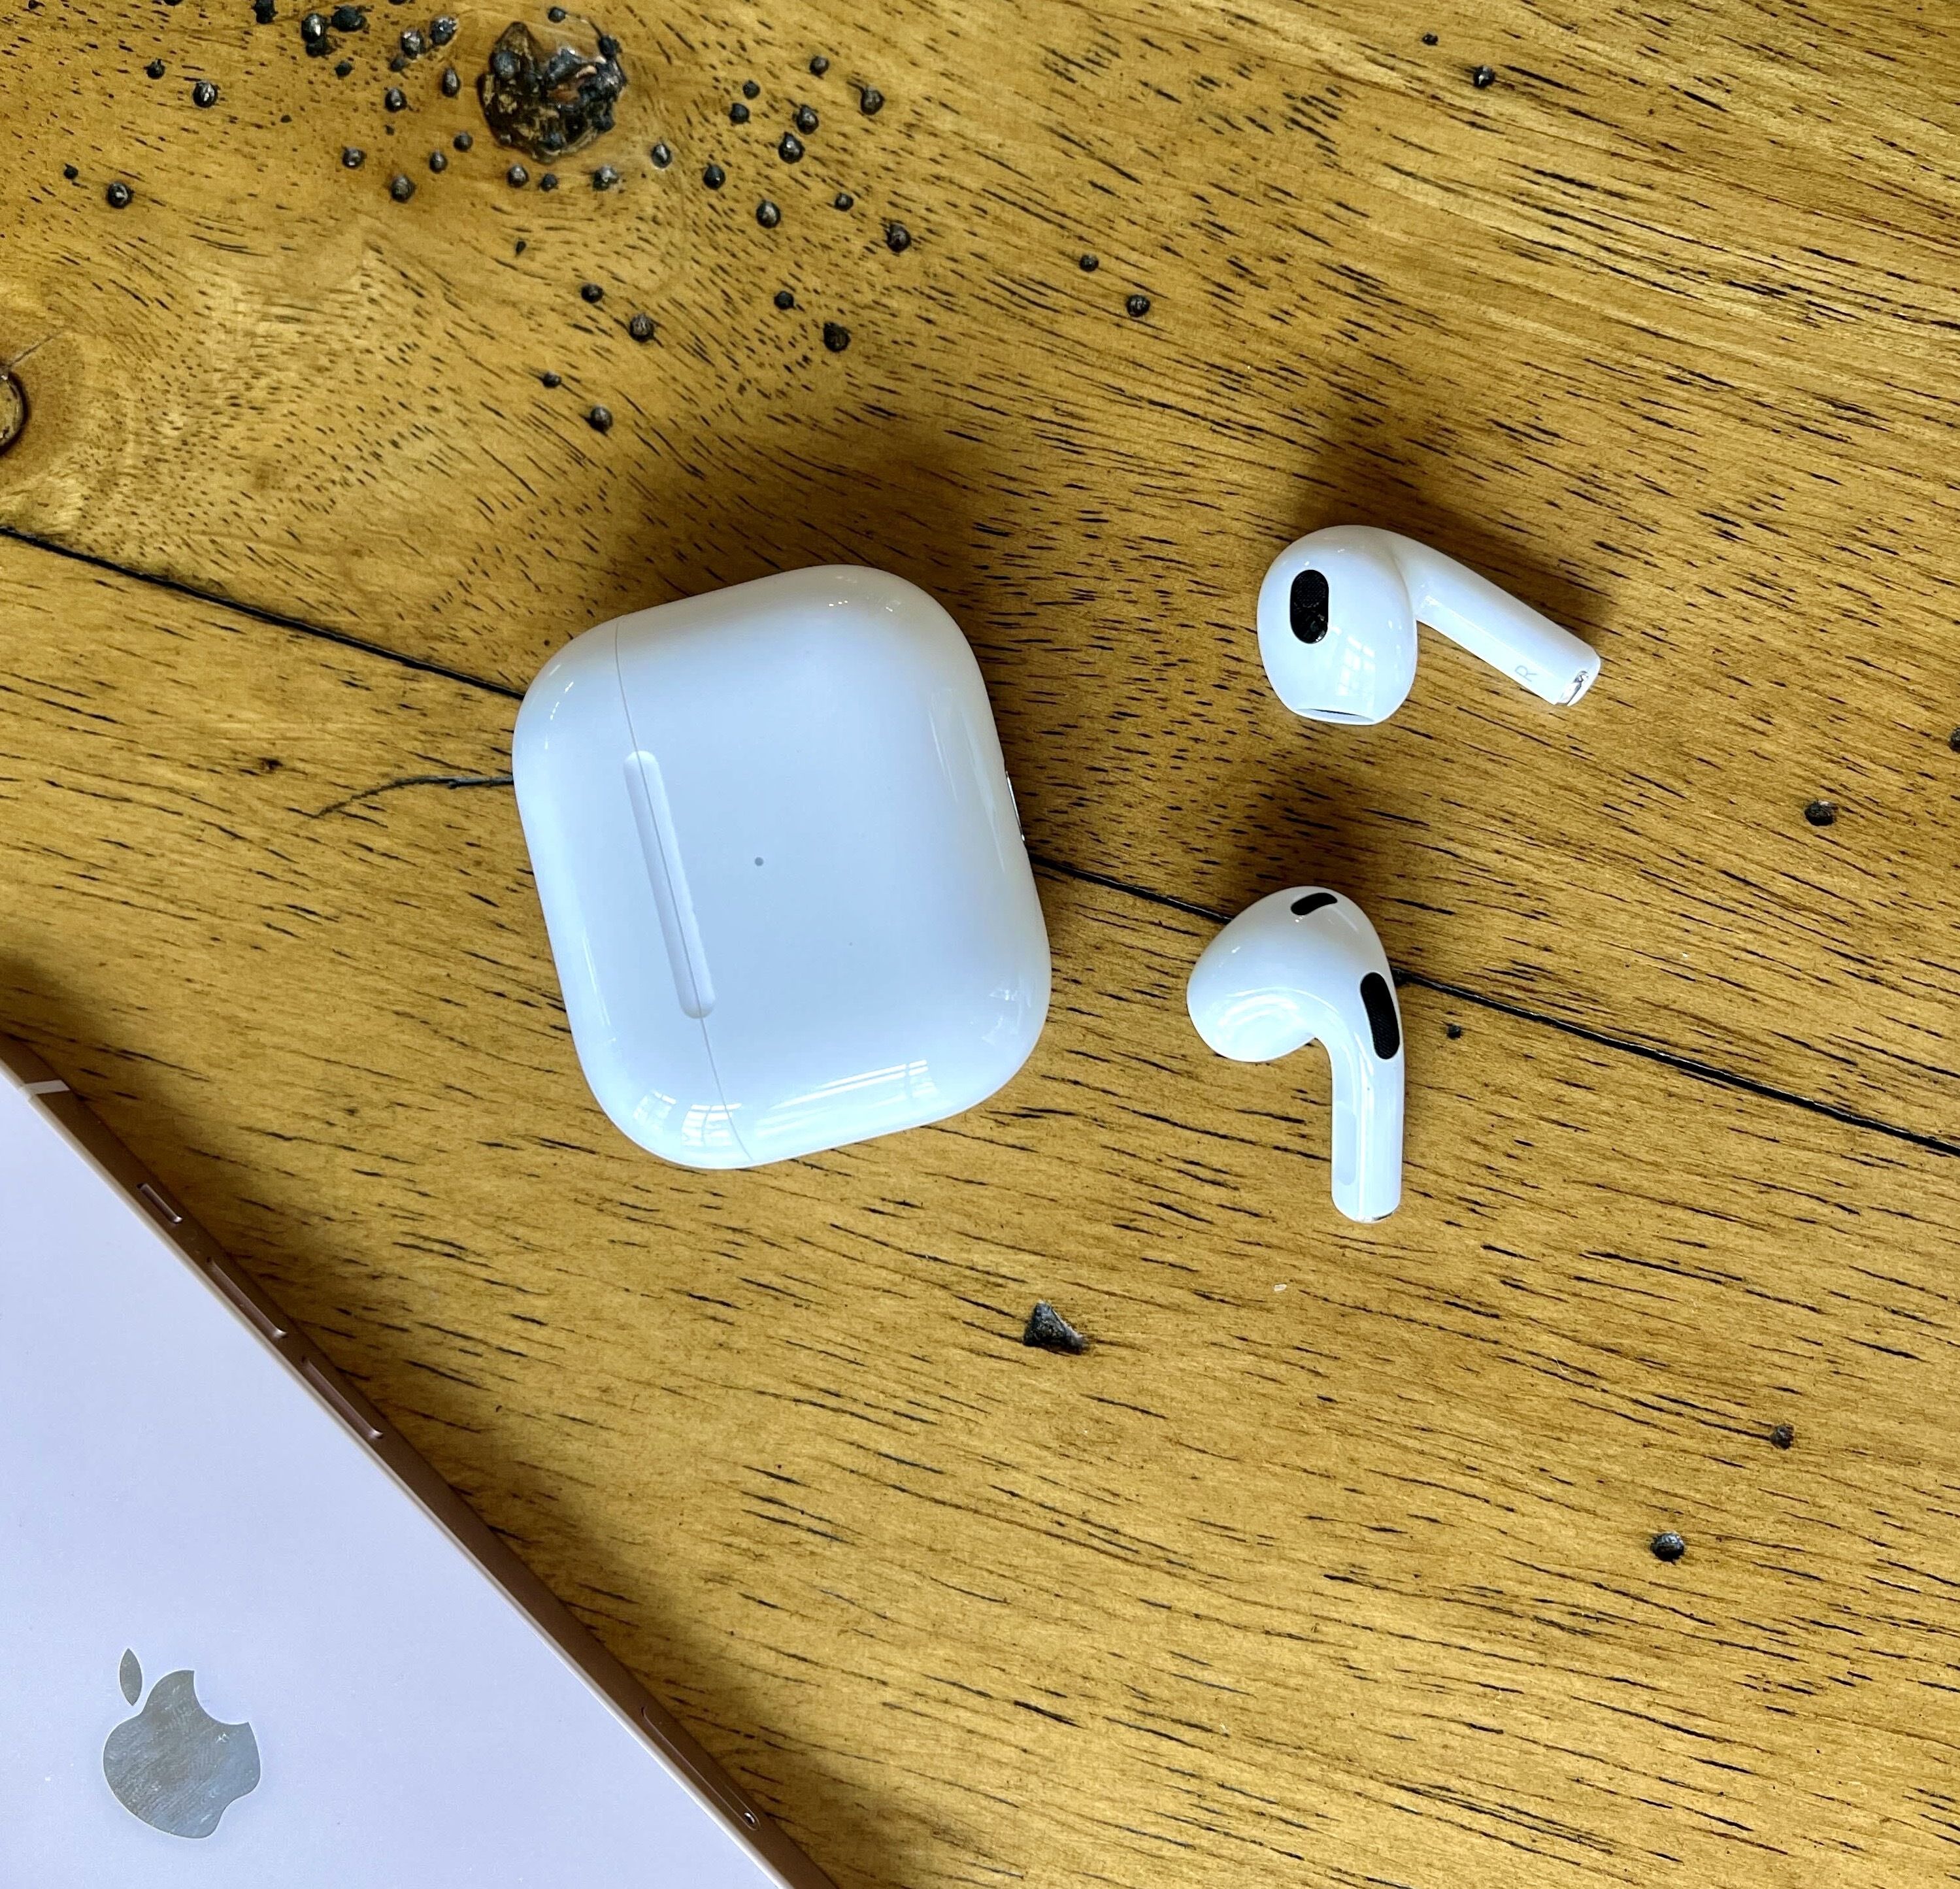 最新アイテム Apple AirPods 3 イヤフォン